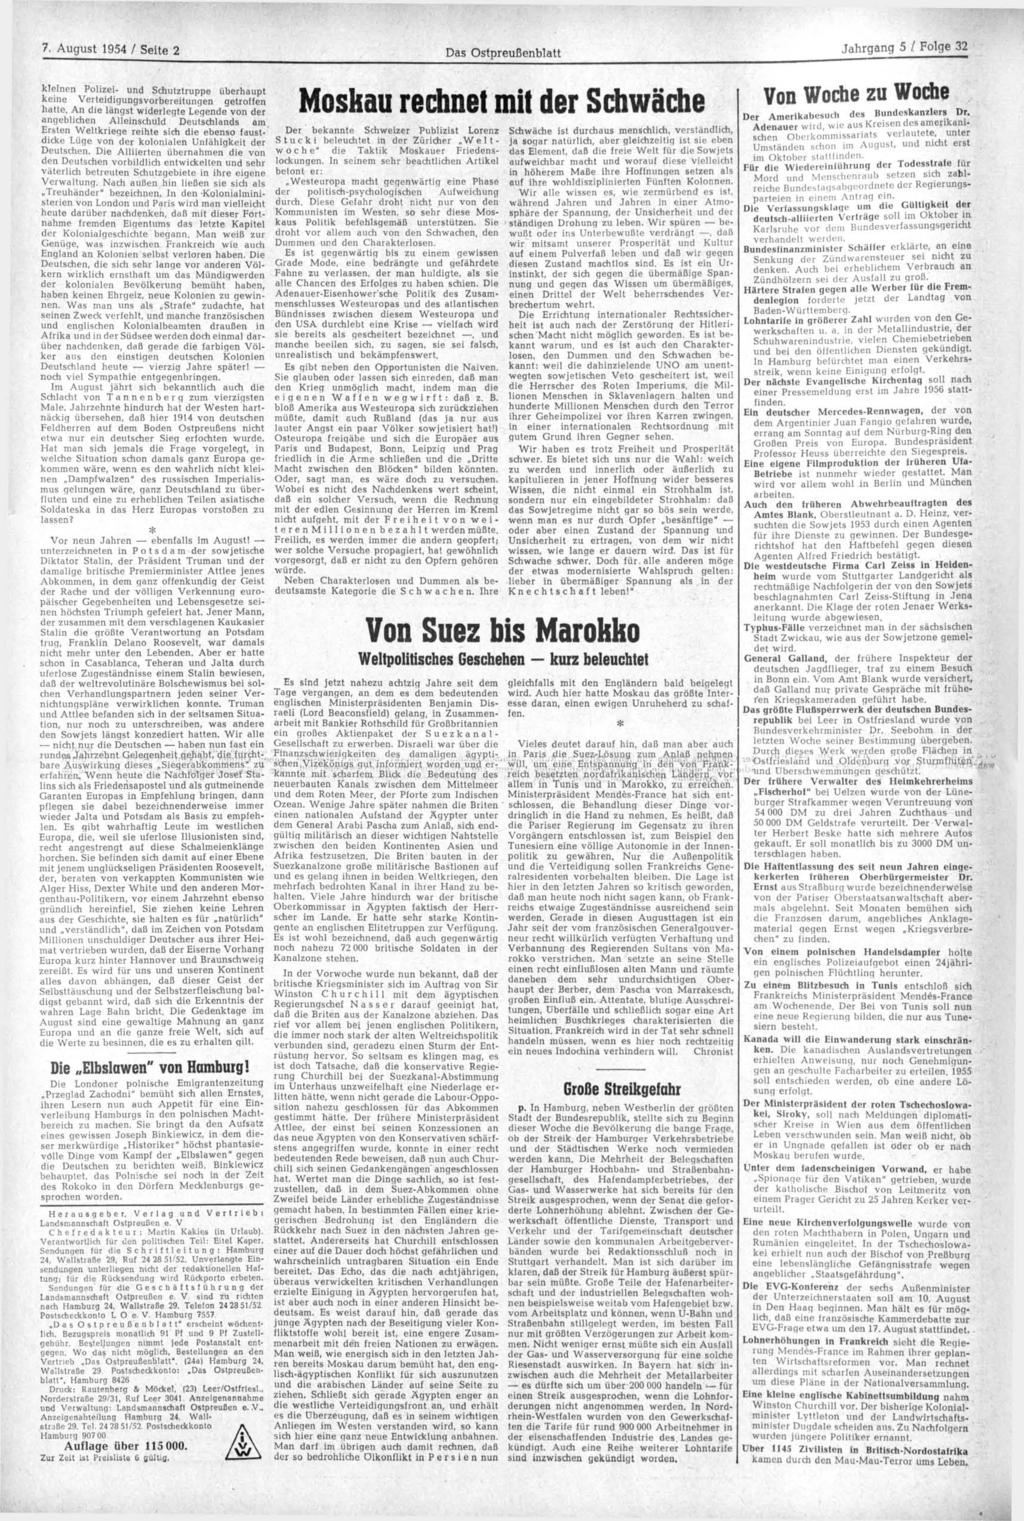 7. August 1954 / Seite 2 Das Ostpreußenblatt Jahrgang 5 / Folge 32 kleinen Polizei- und Schutztruppe überhaupt keine Verteidigungsvorbereitungen getroffen hatte.